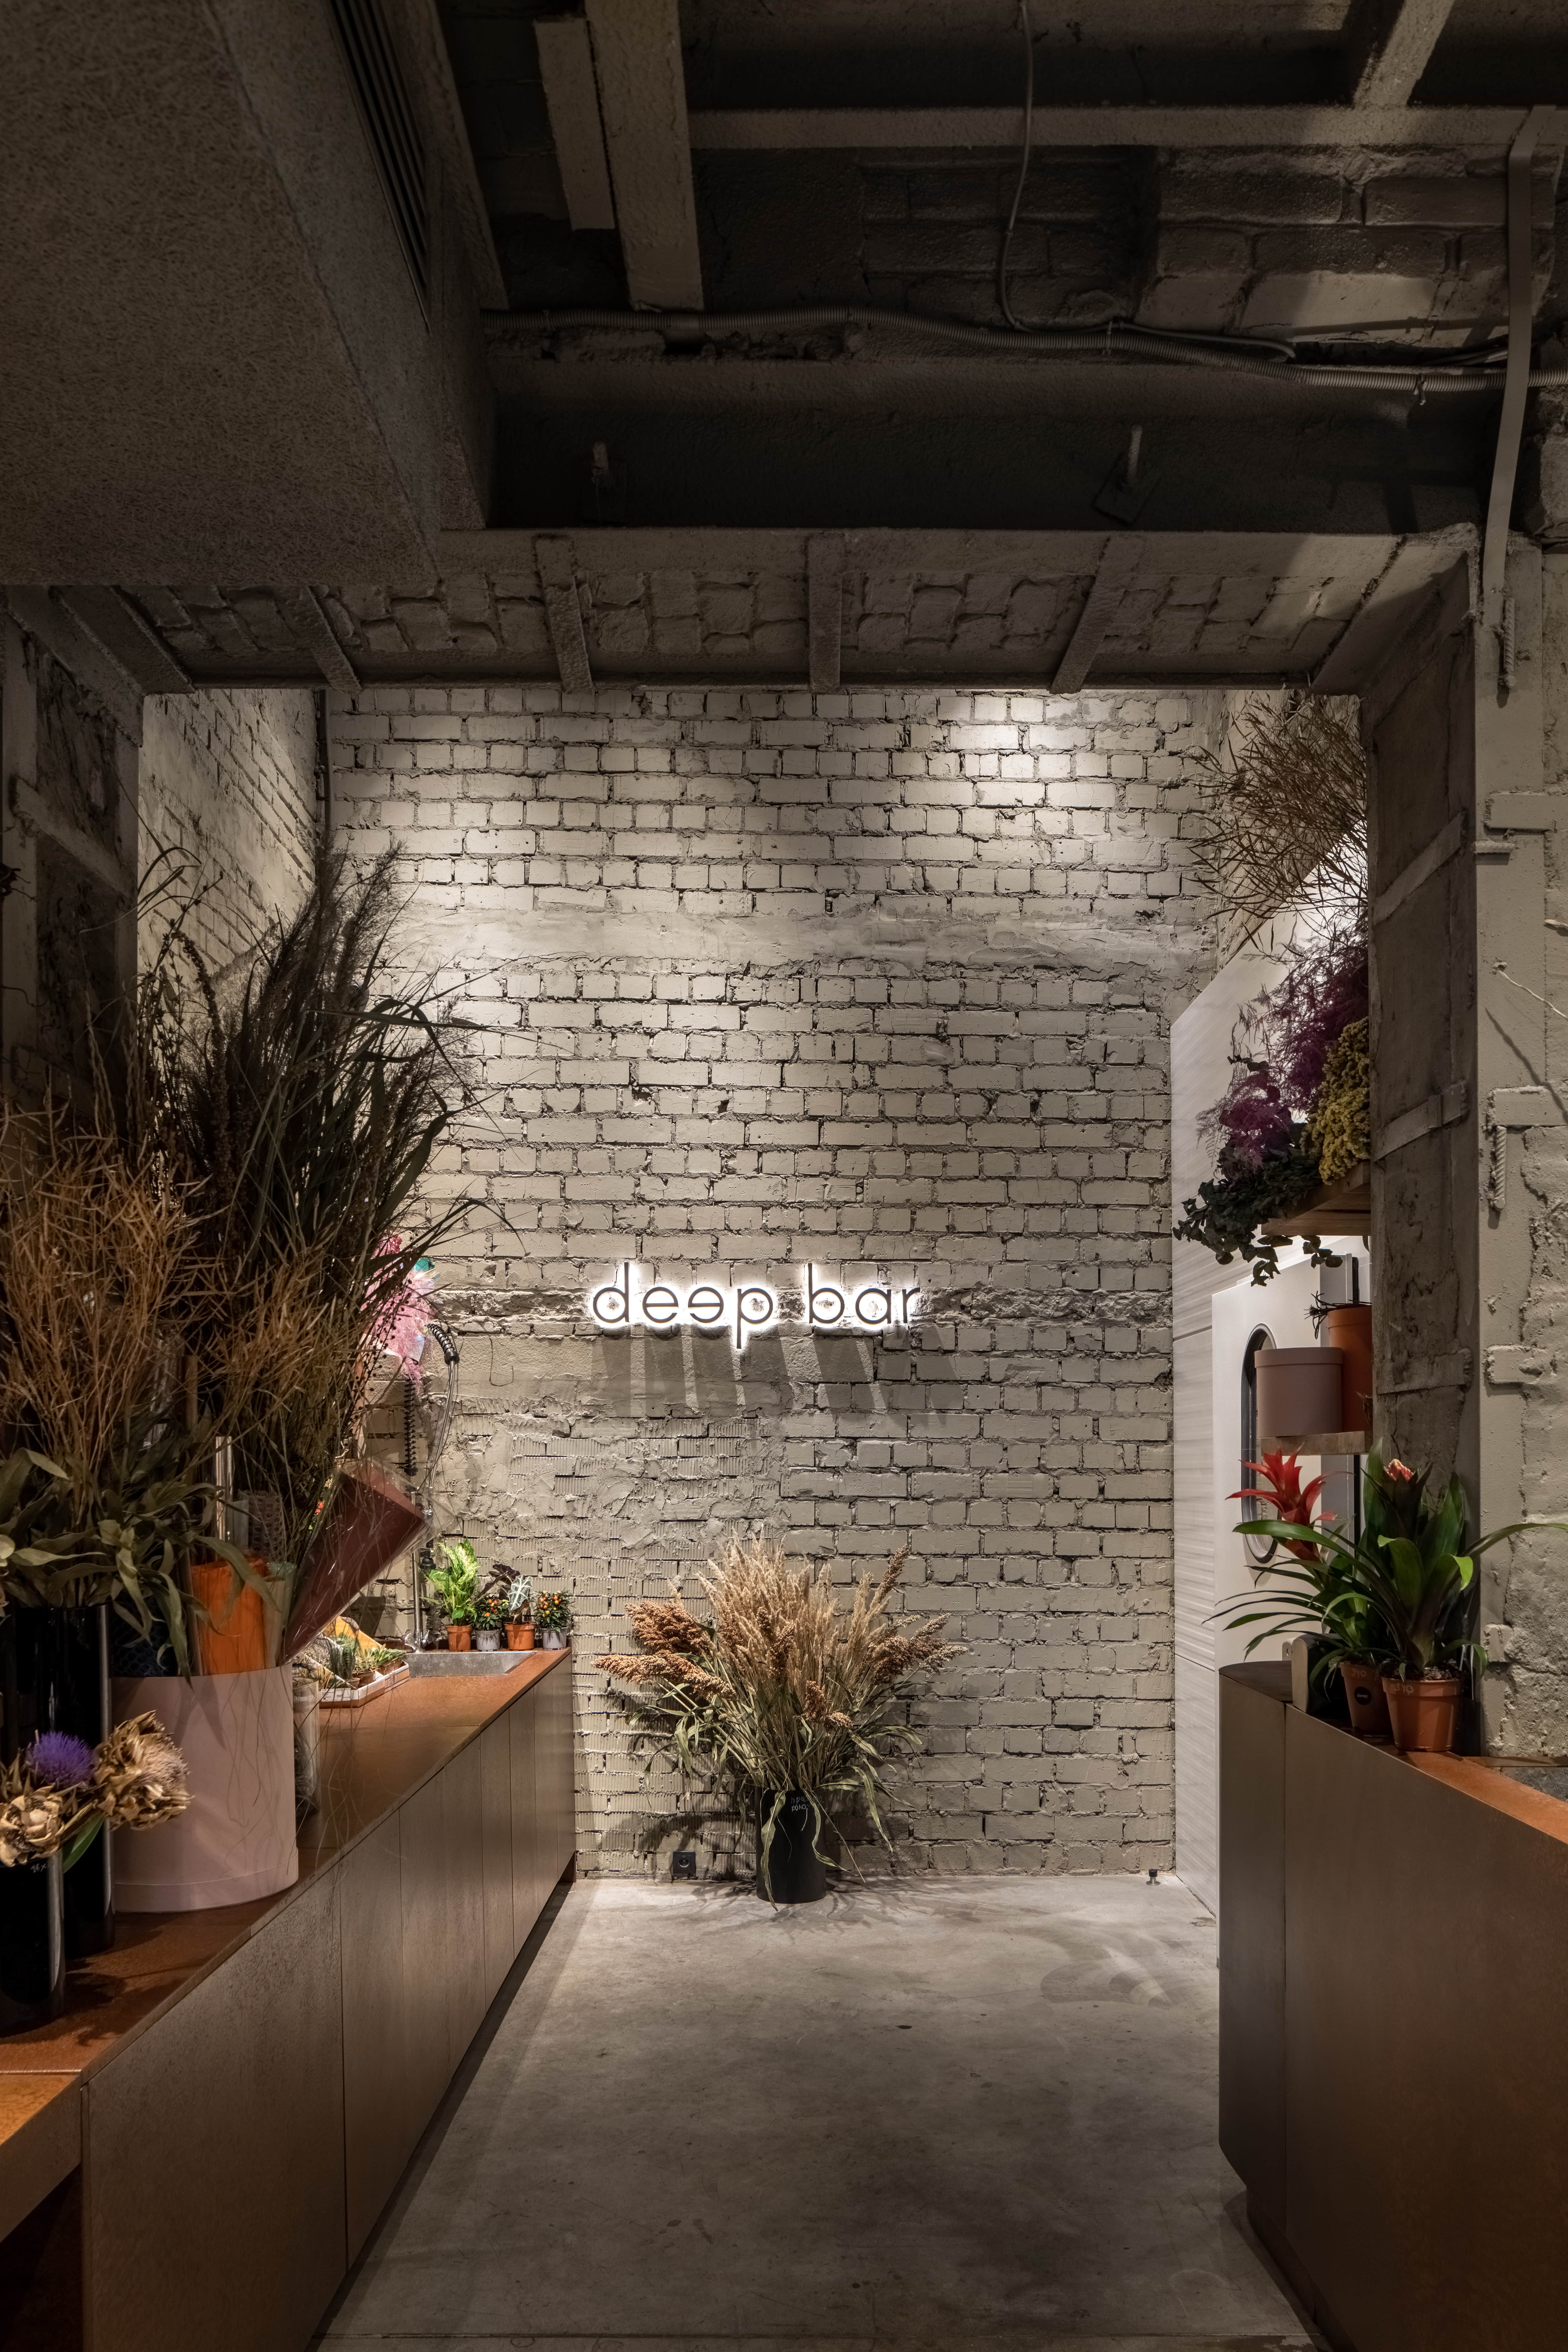 (Deep Bar - An underground bar that blends into a flower shop)